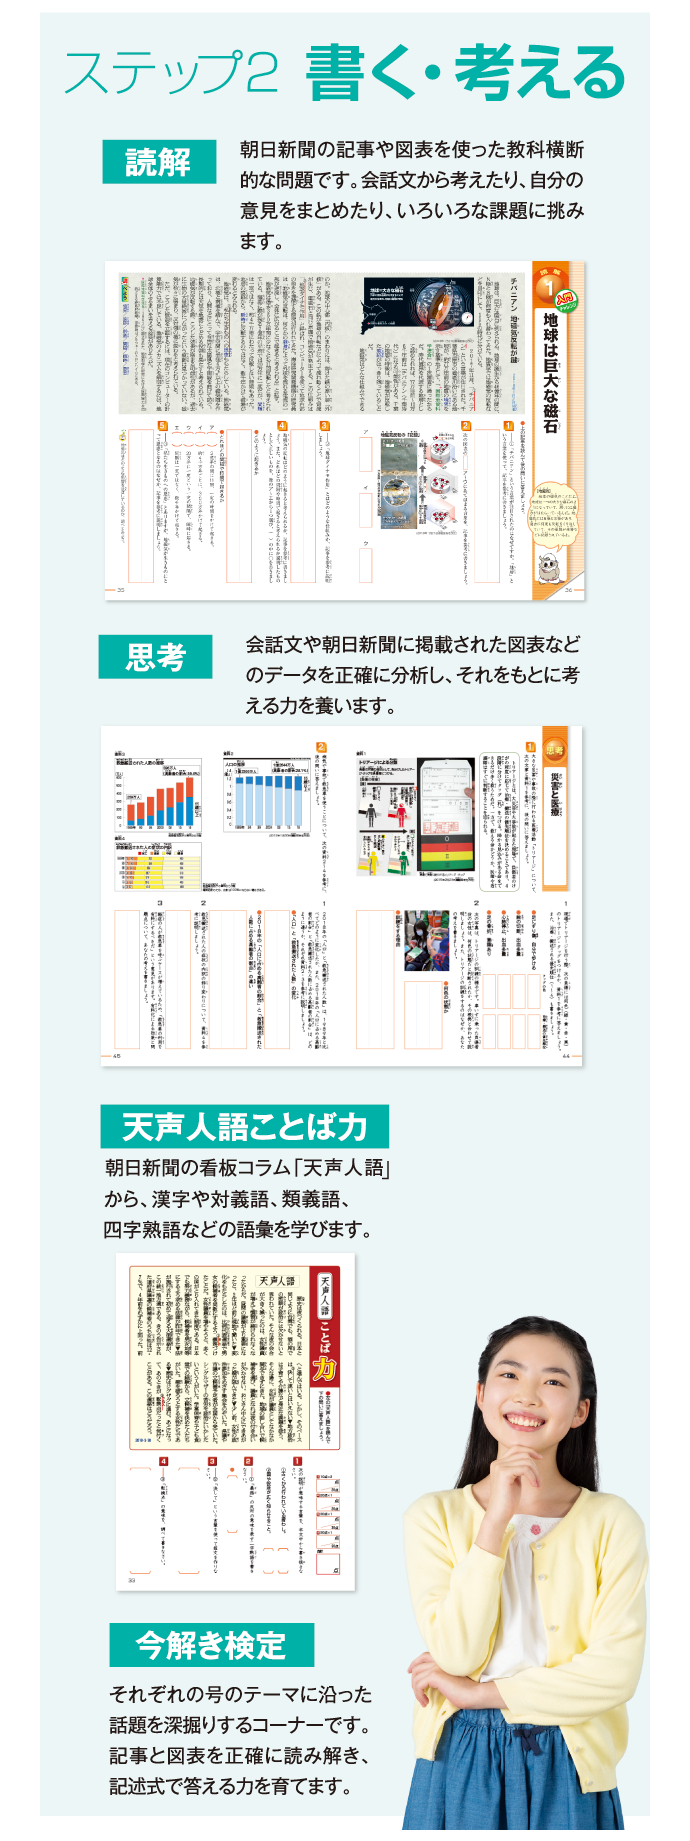 今解き教室 ― 朝日新聞で学ぶ総合教材「今解き教室」